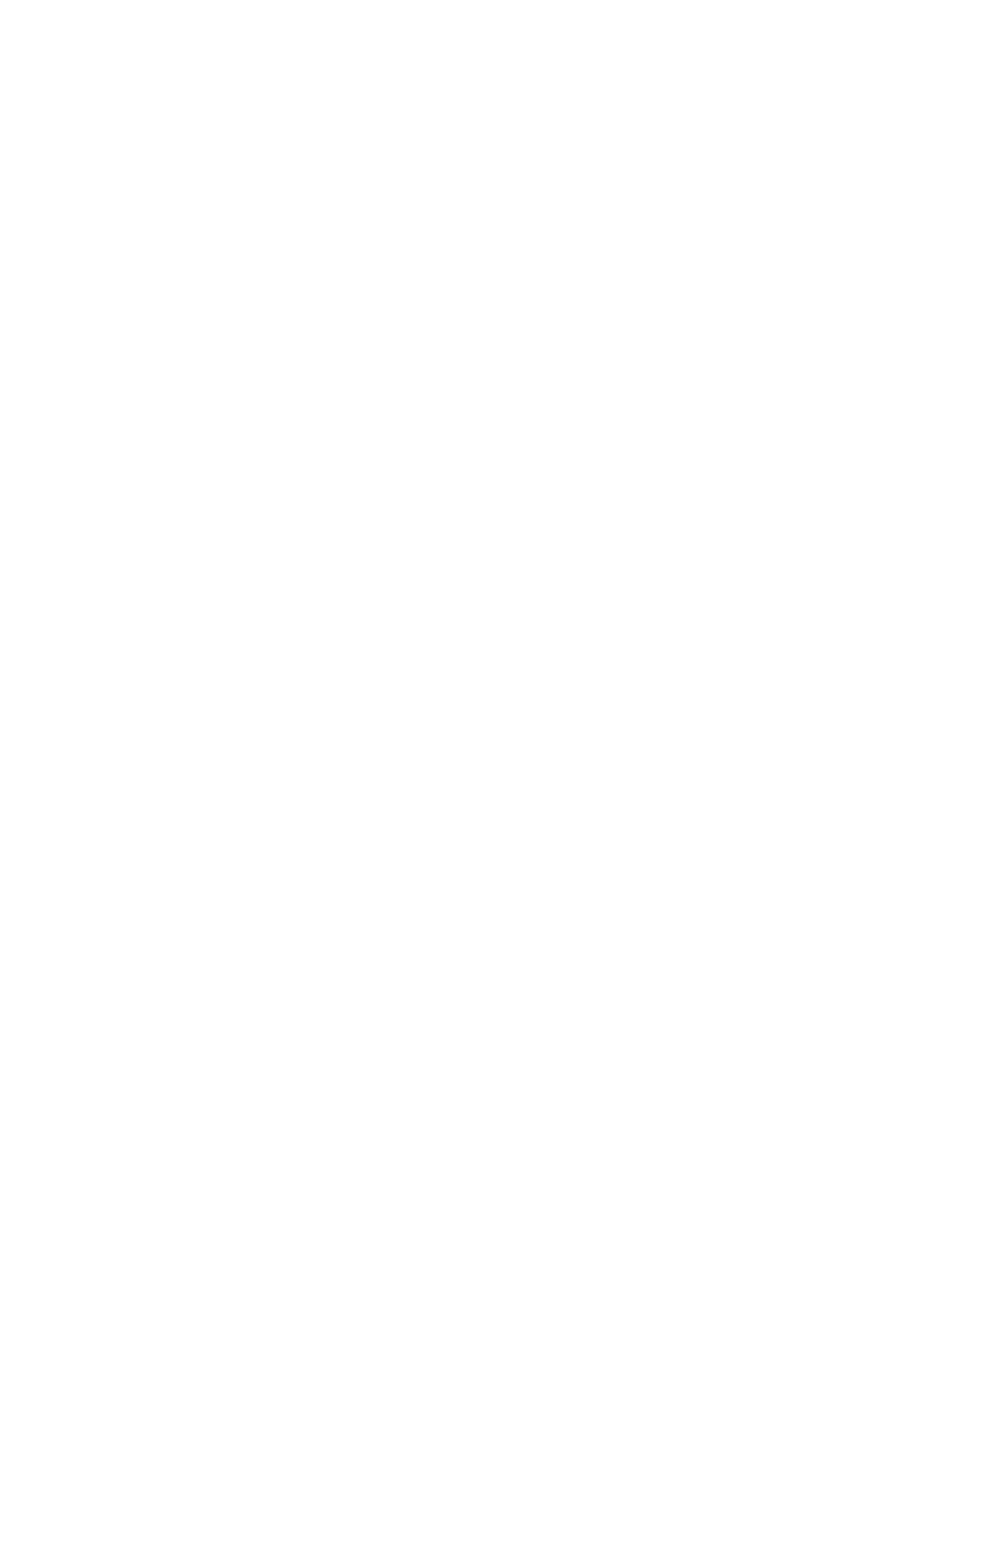 Frasers Group logo for dark backgrounds (transparent PNG)